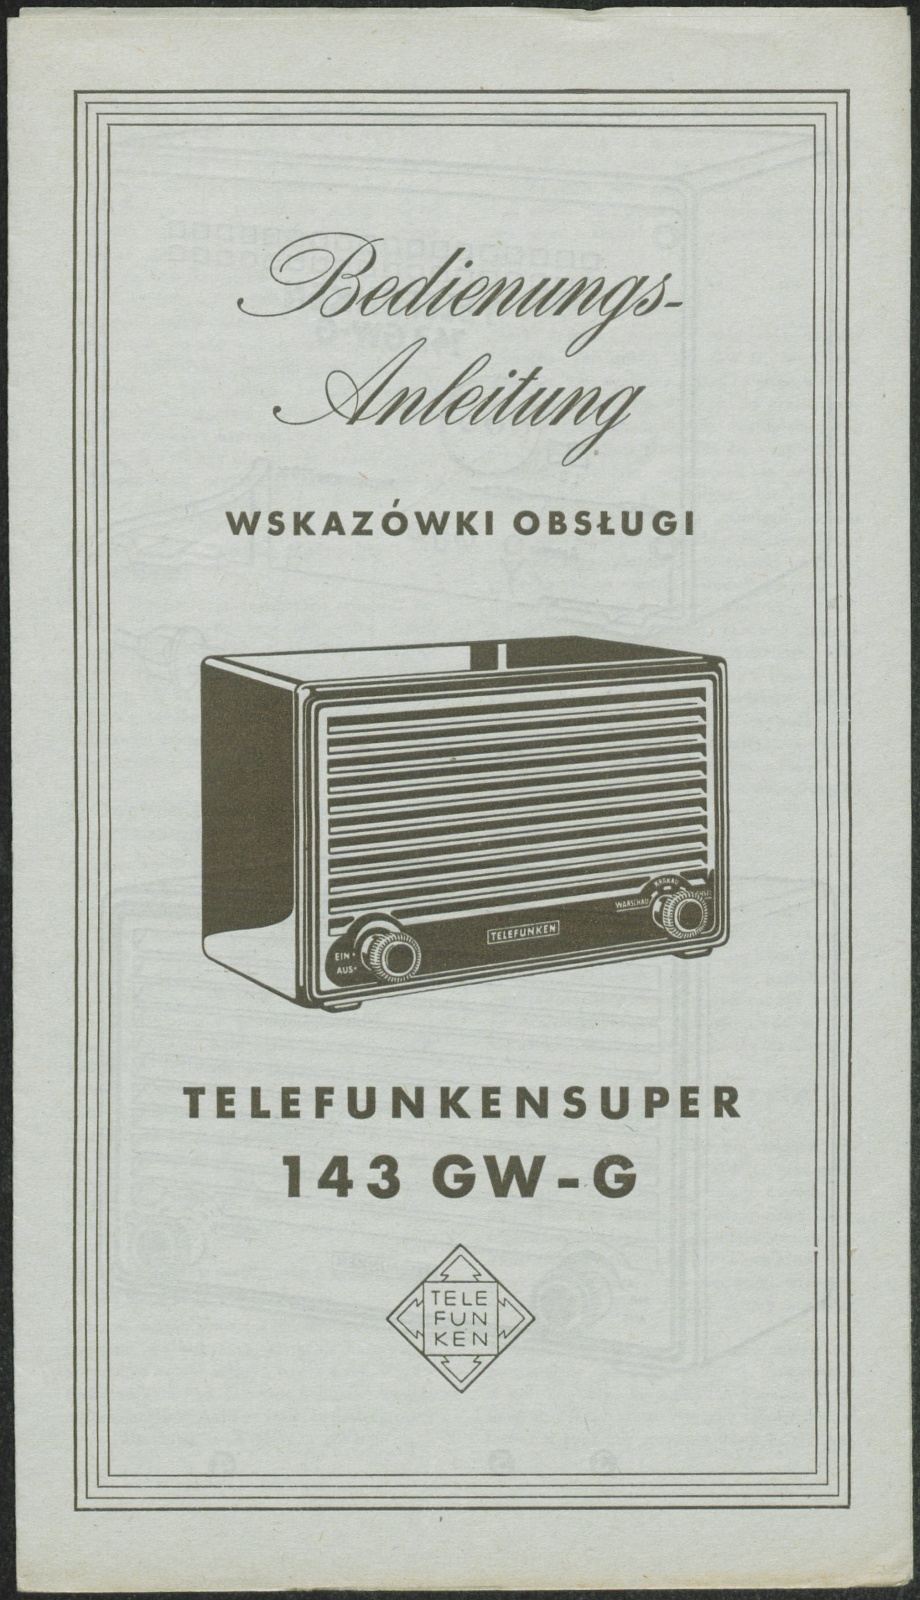 Bedienungsanleitung: Bedienungsanleitung Wskazowki Obslugi Telefunkensuper 143 GW - G (Stiftung Deutsches Technikmuseum Berlin CC0)